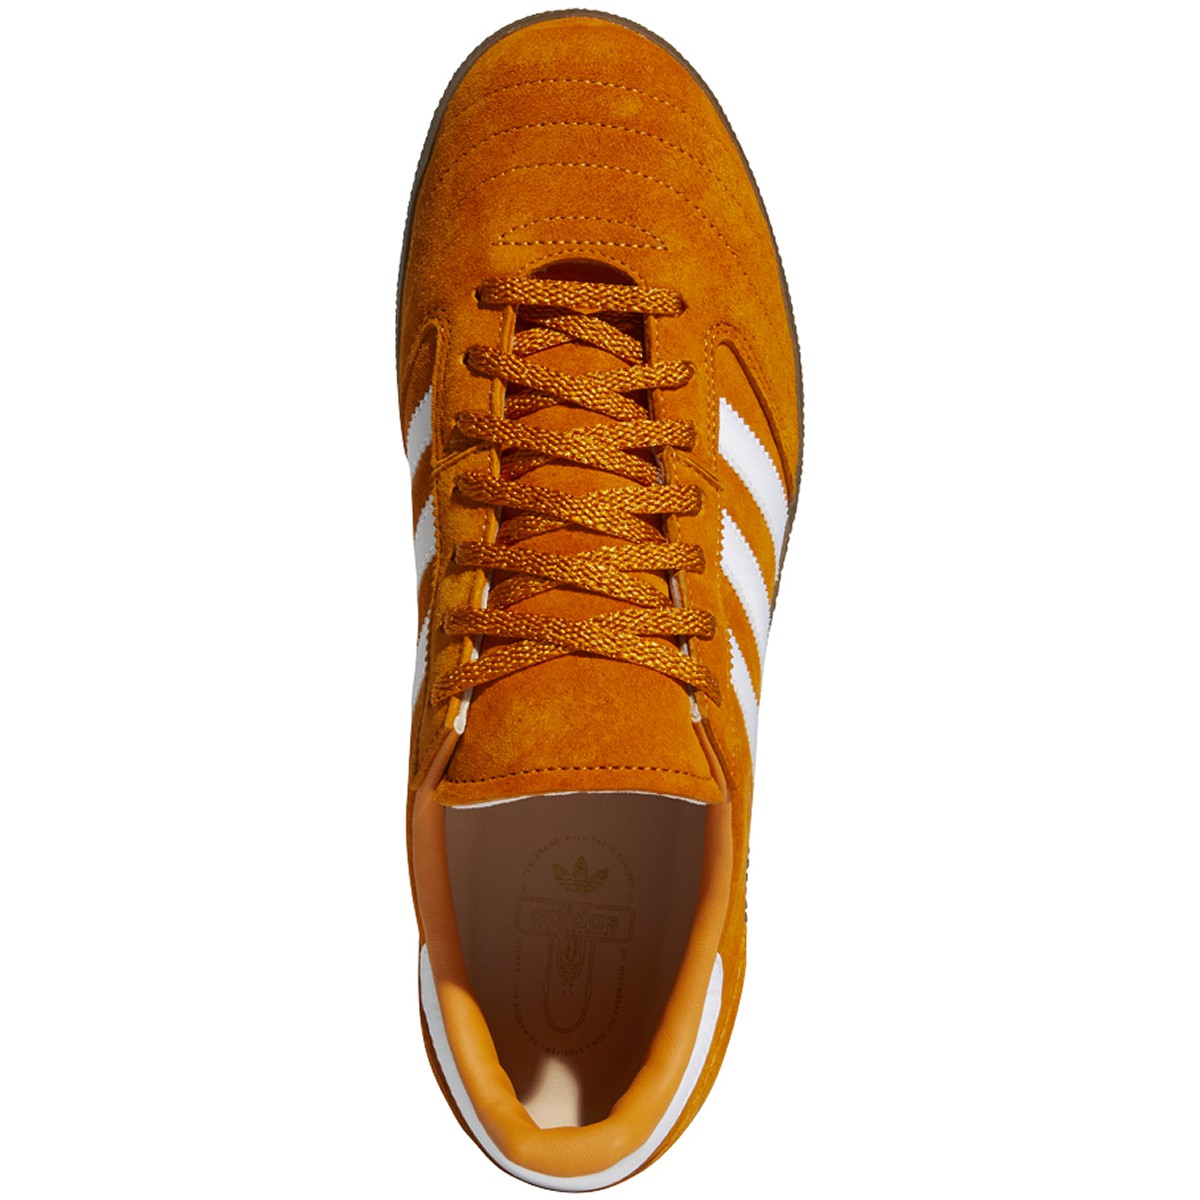 Focus Orange Busenitz Vintage Adidas Skateboarding Shoe Top